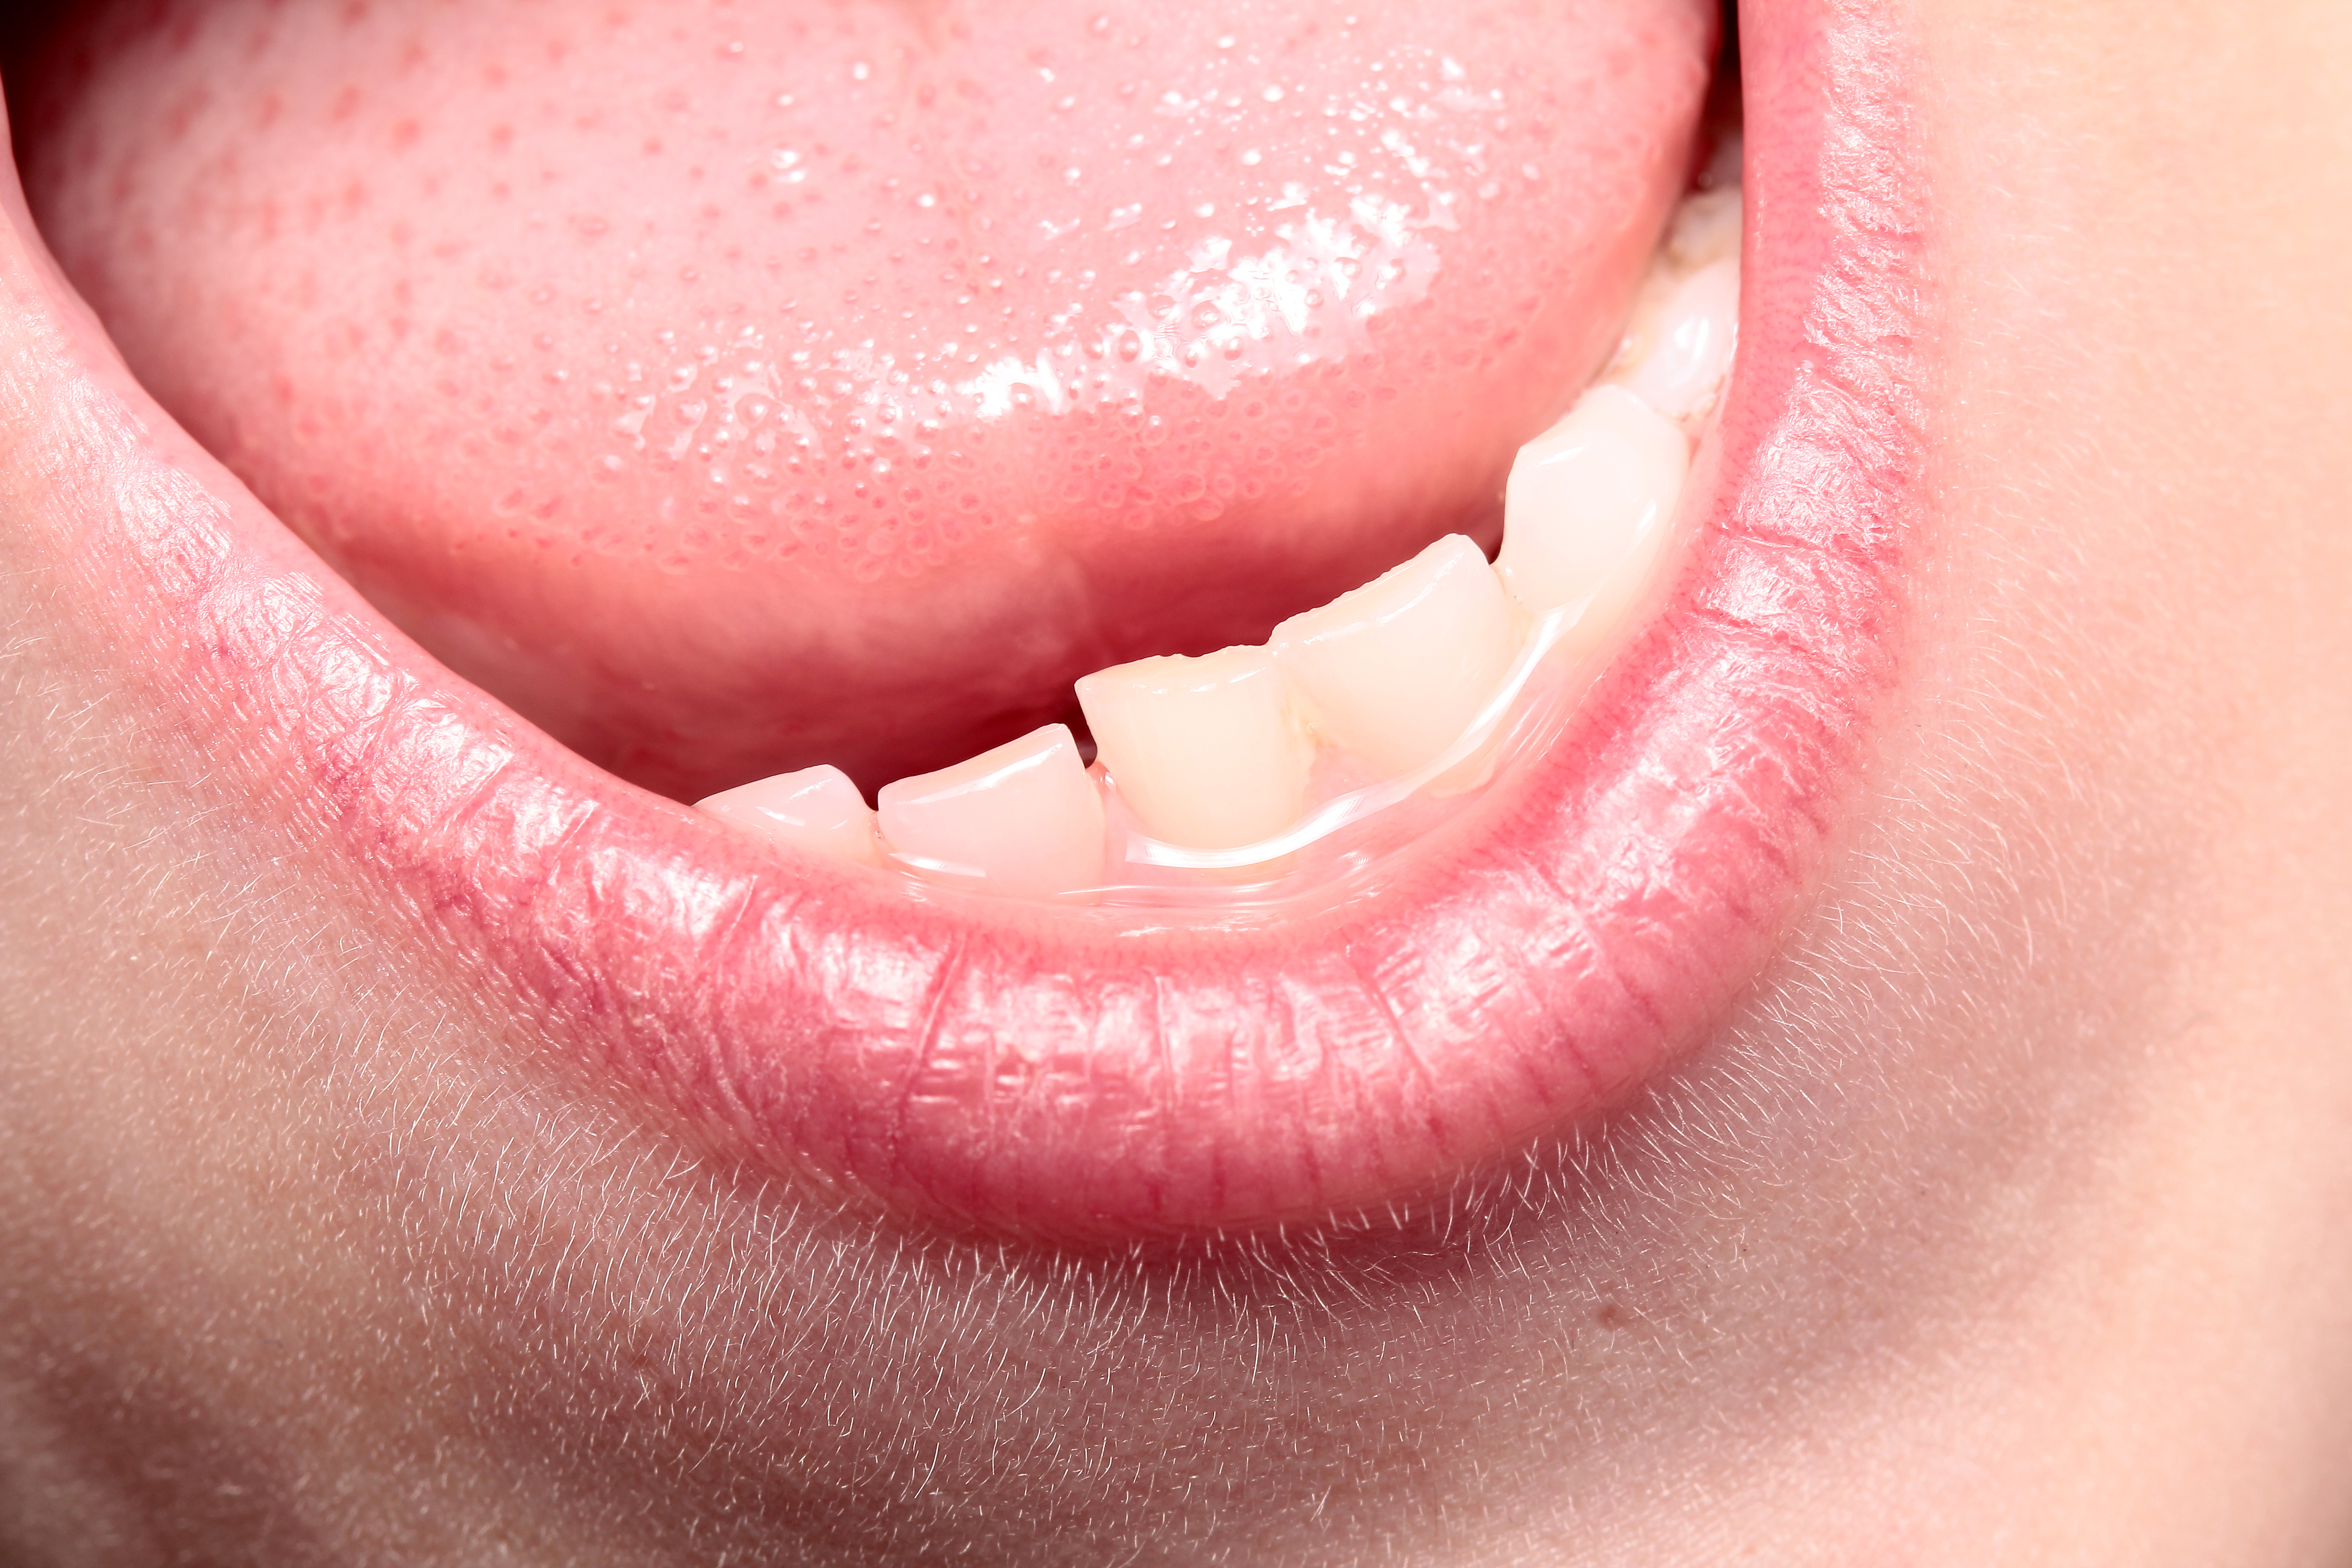 An zungenspitze pickel Zungenbrennen: Ursachen